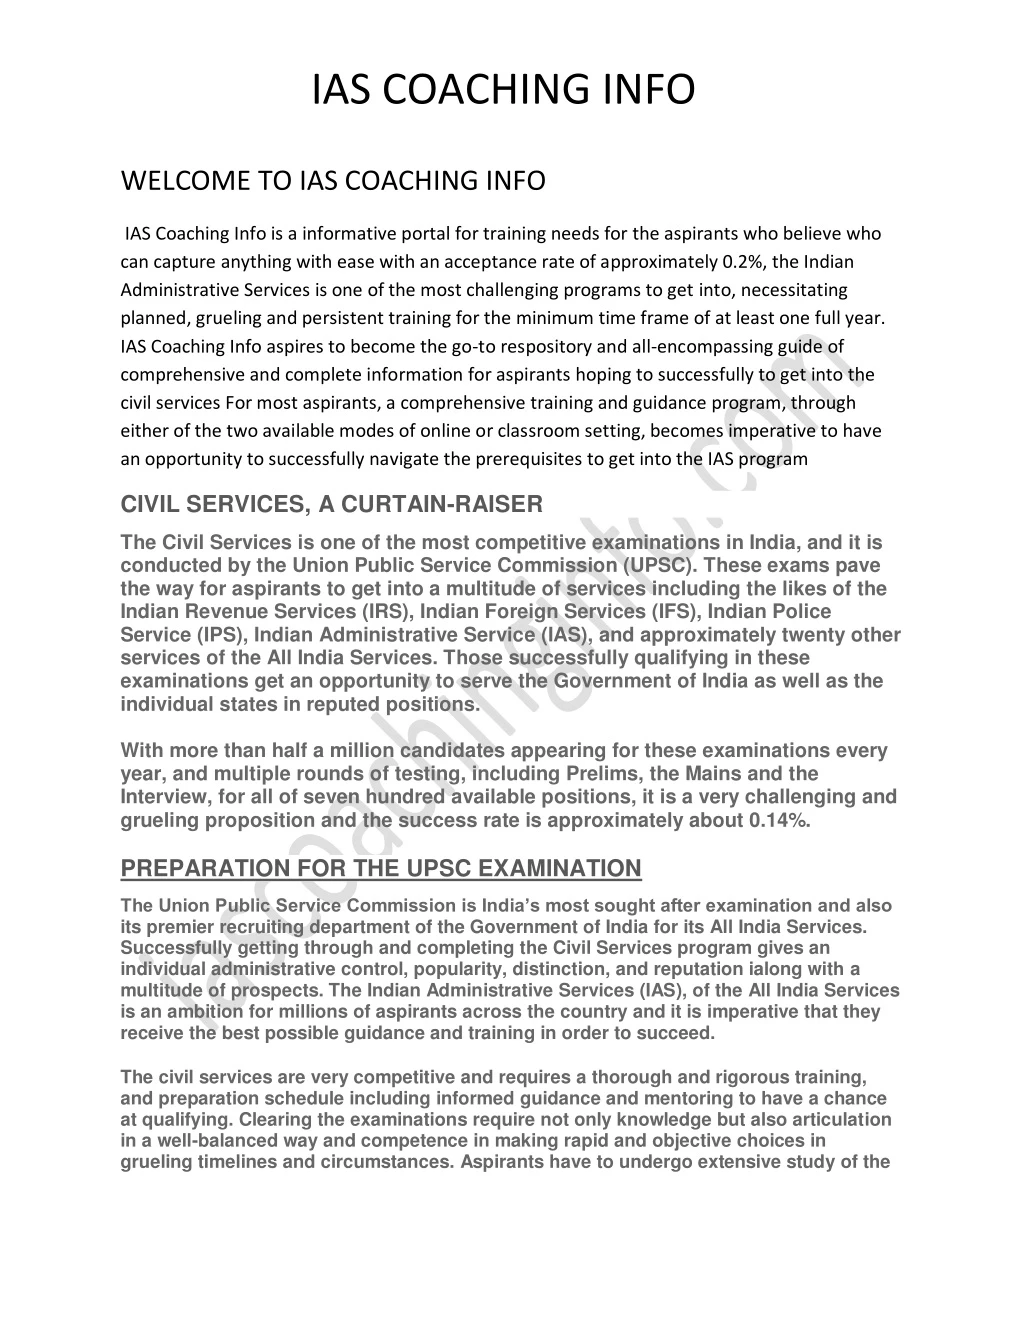 ias coaching info welcome to ias coaching info